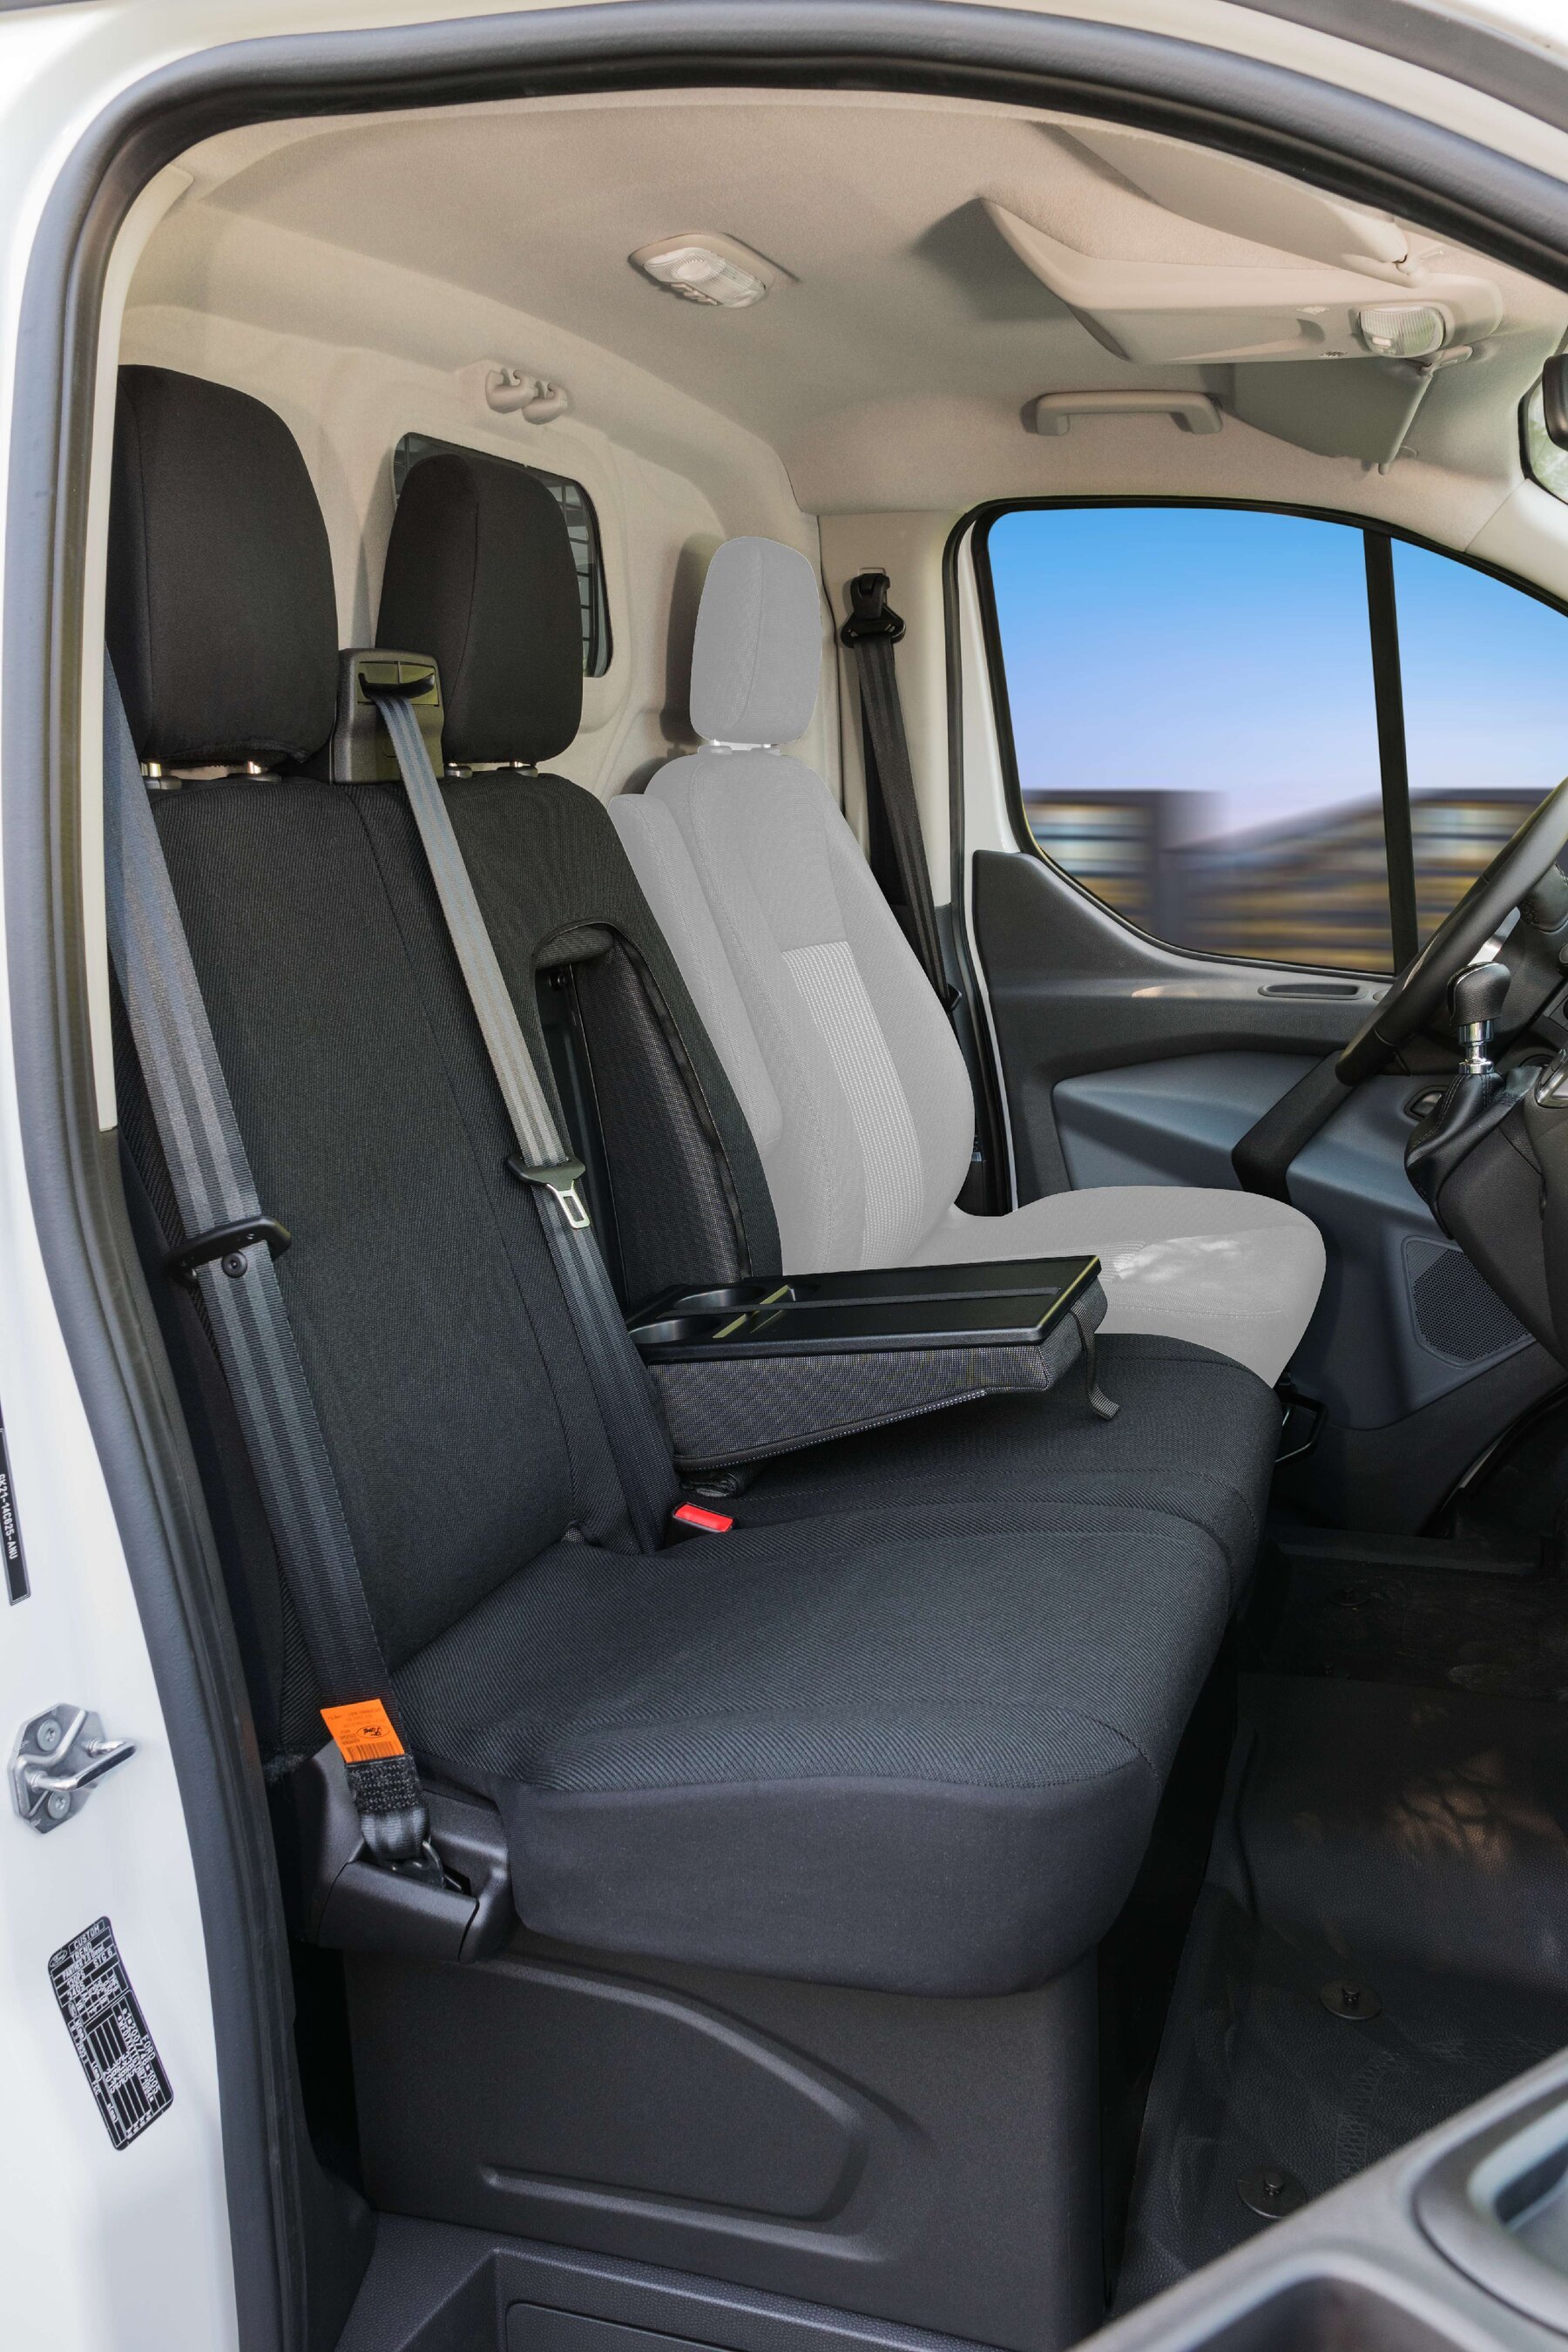 Blue Fleck dot tissu Housses de siège Pour S'Adapter À Un FORD TRANSIT Commercial Van 